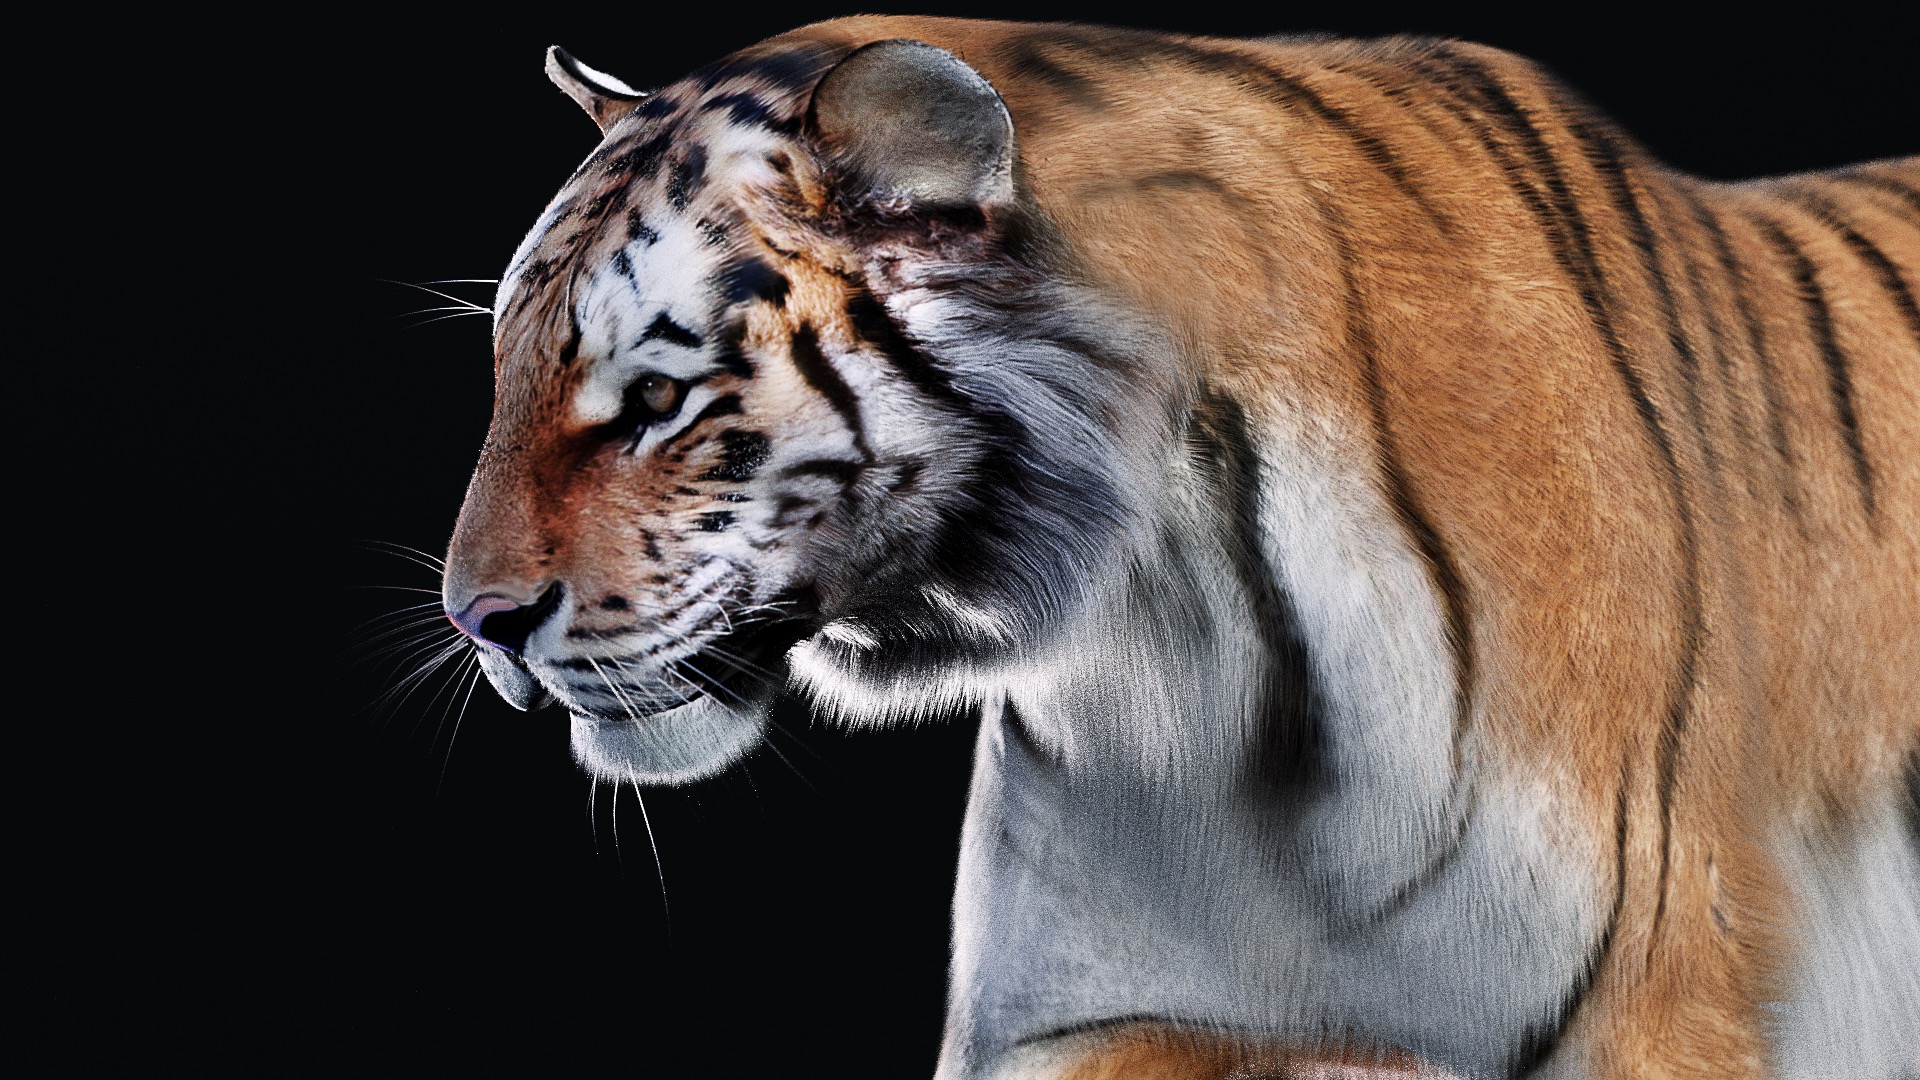 2. Realistic Siberian Tiger Tattoos - wide 8